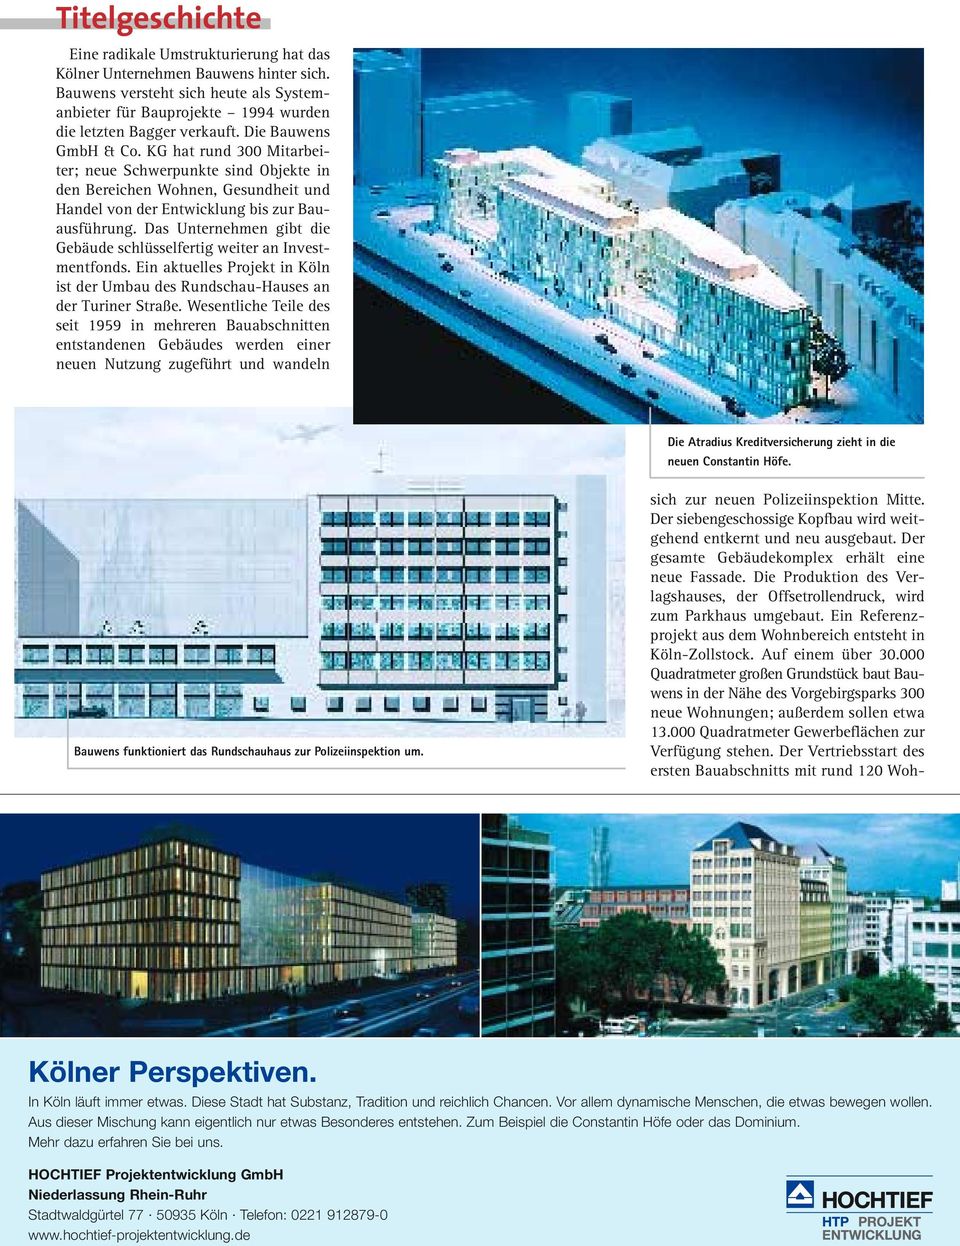 Das Unternehmen gibt die Gebäude schlüsselfertig weiter an Investmentfonds. Ein aktuelles Projekt in Köln ist der Umbau des Rundschau-Hauses an der Turiner Straße.